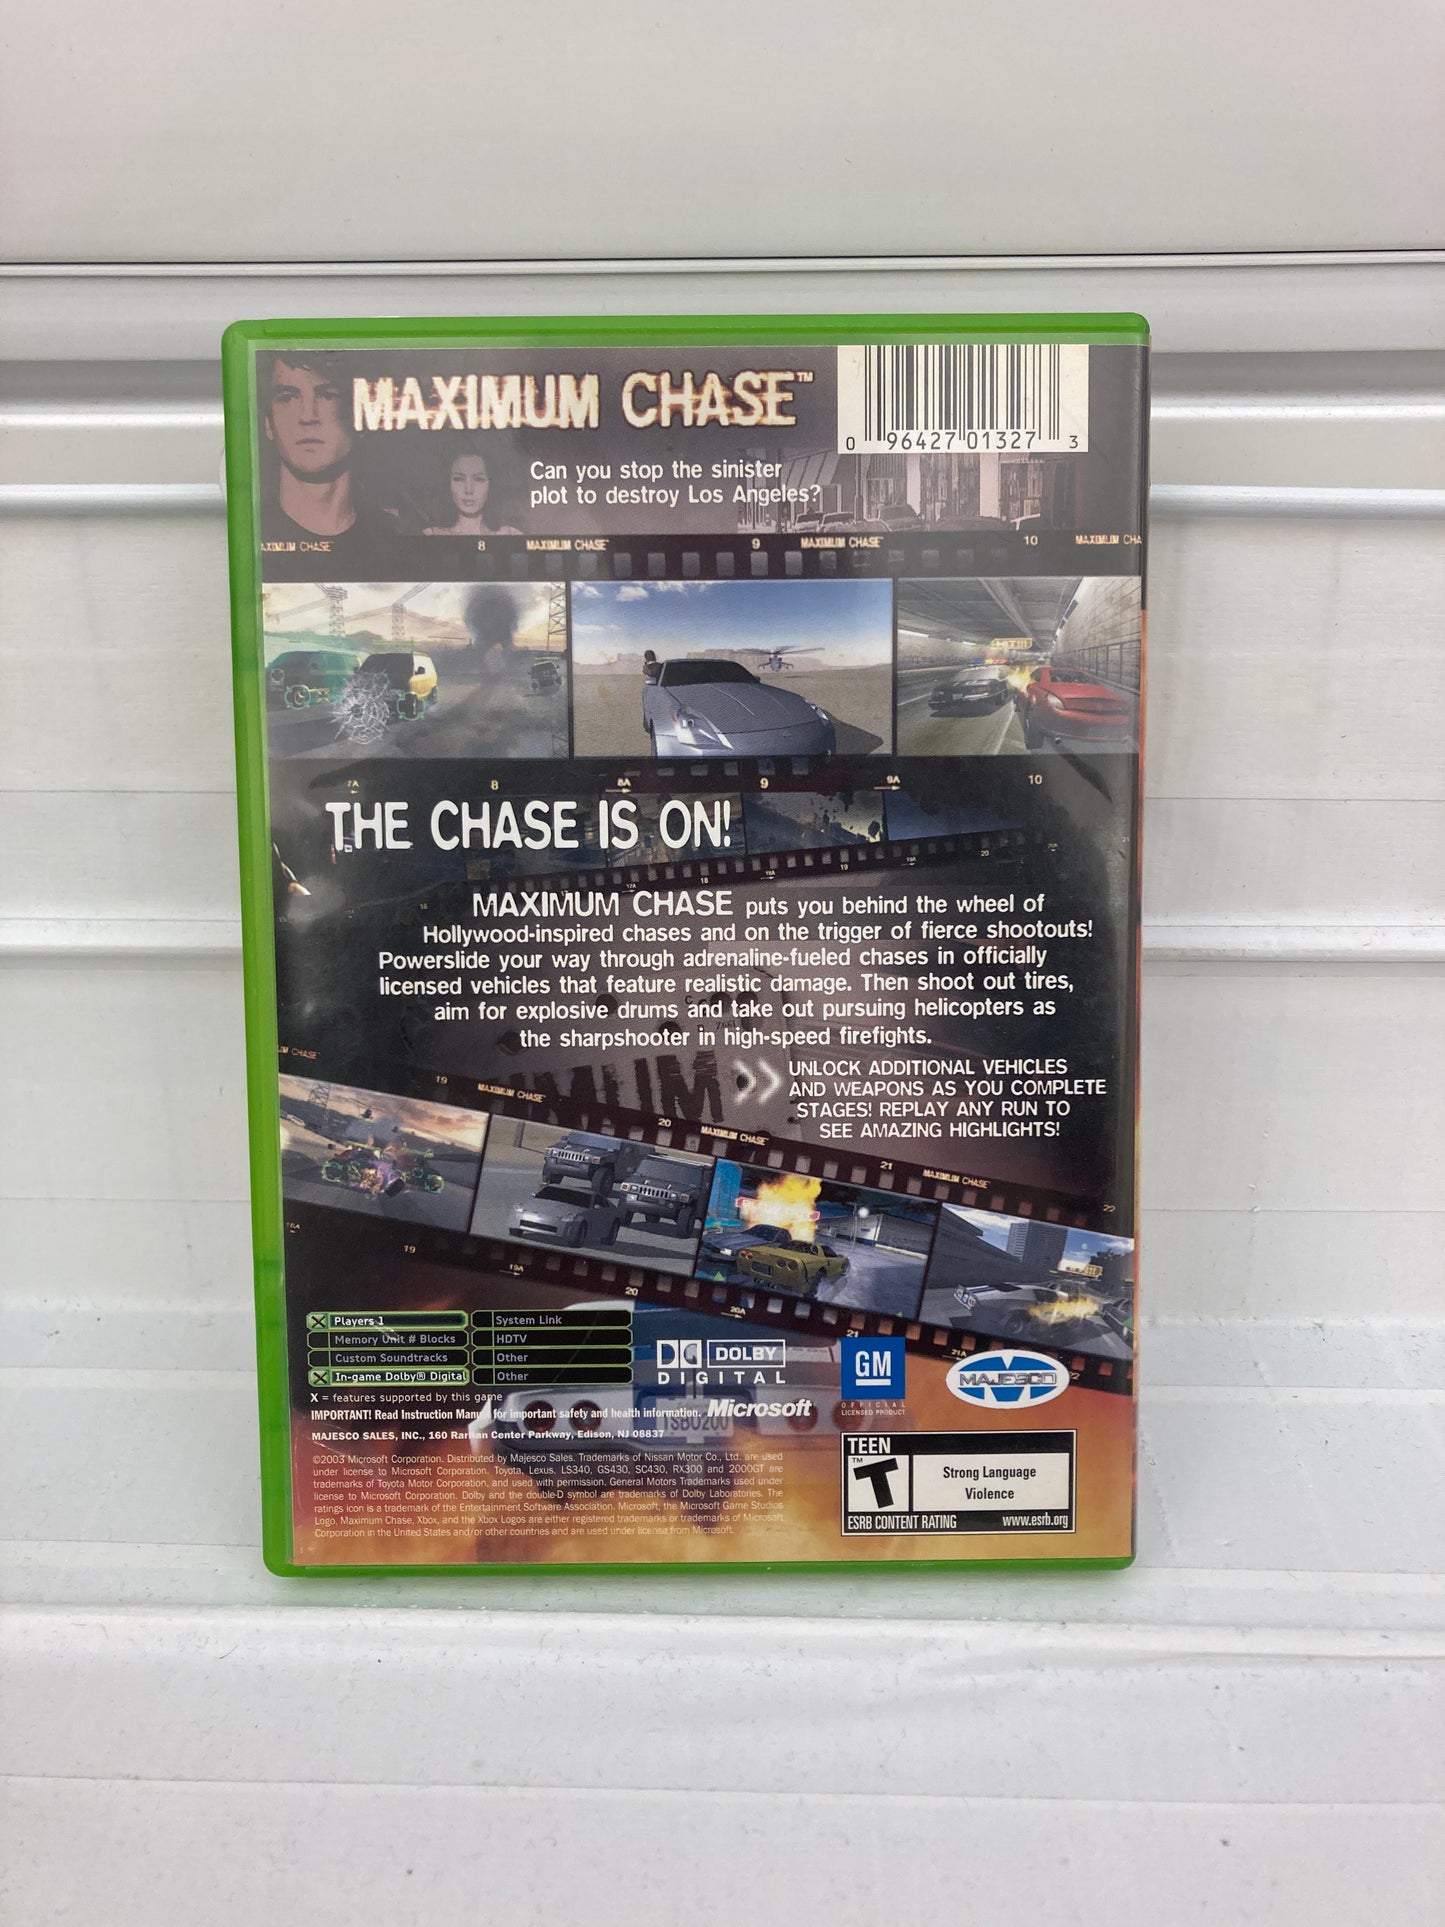 Maximum Chase - Xbox